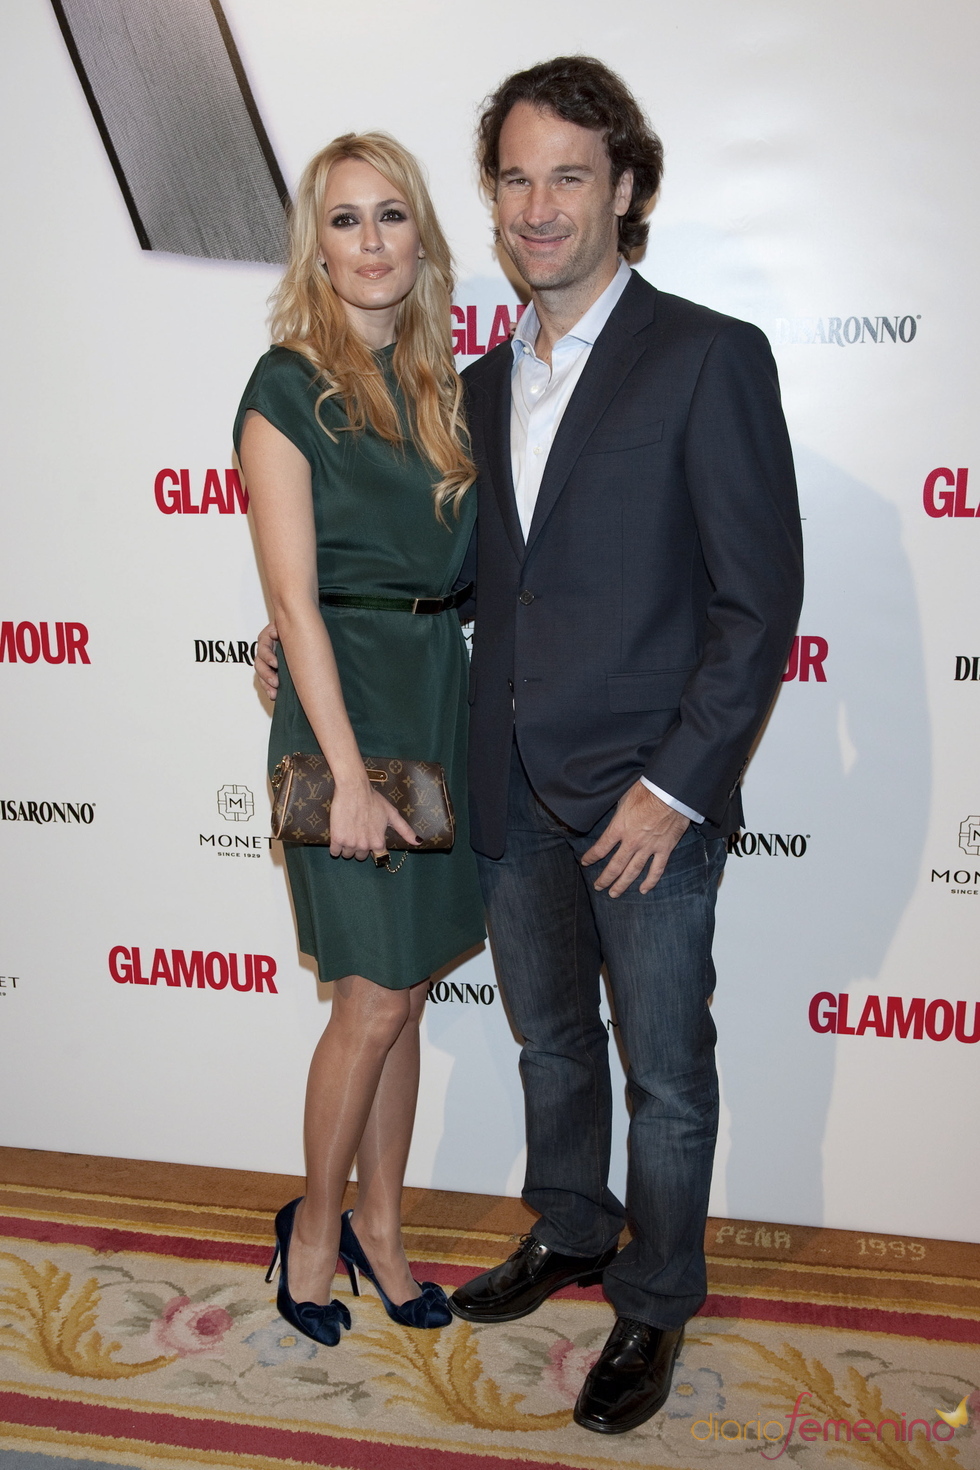 Carolina Cerezuela y Carlos Moyá en los Premios Top Glamour 2010